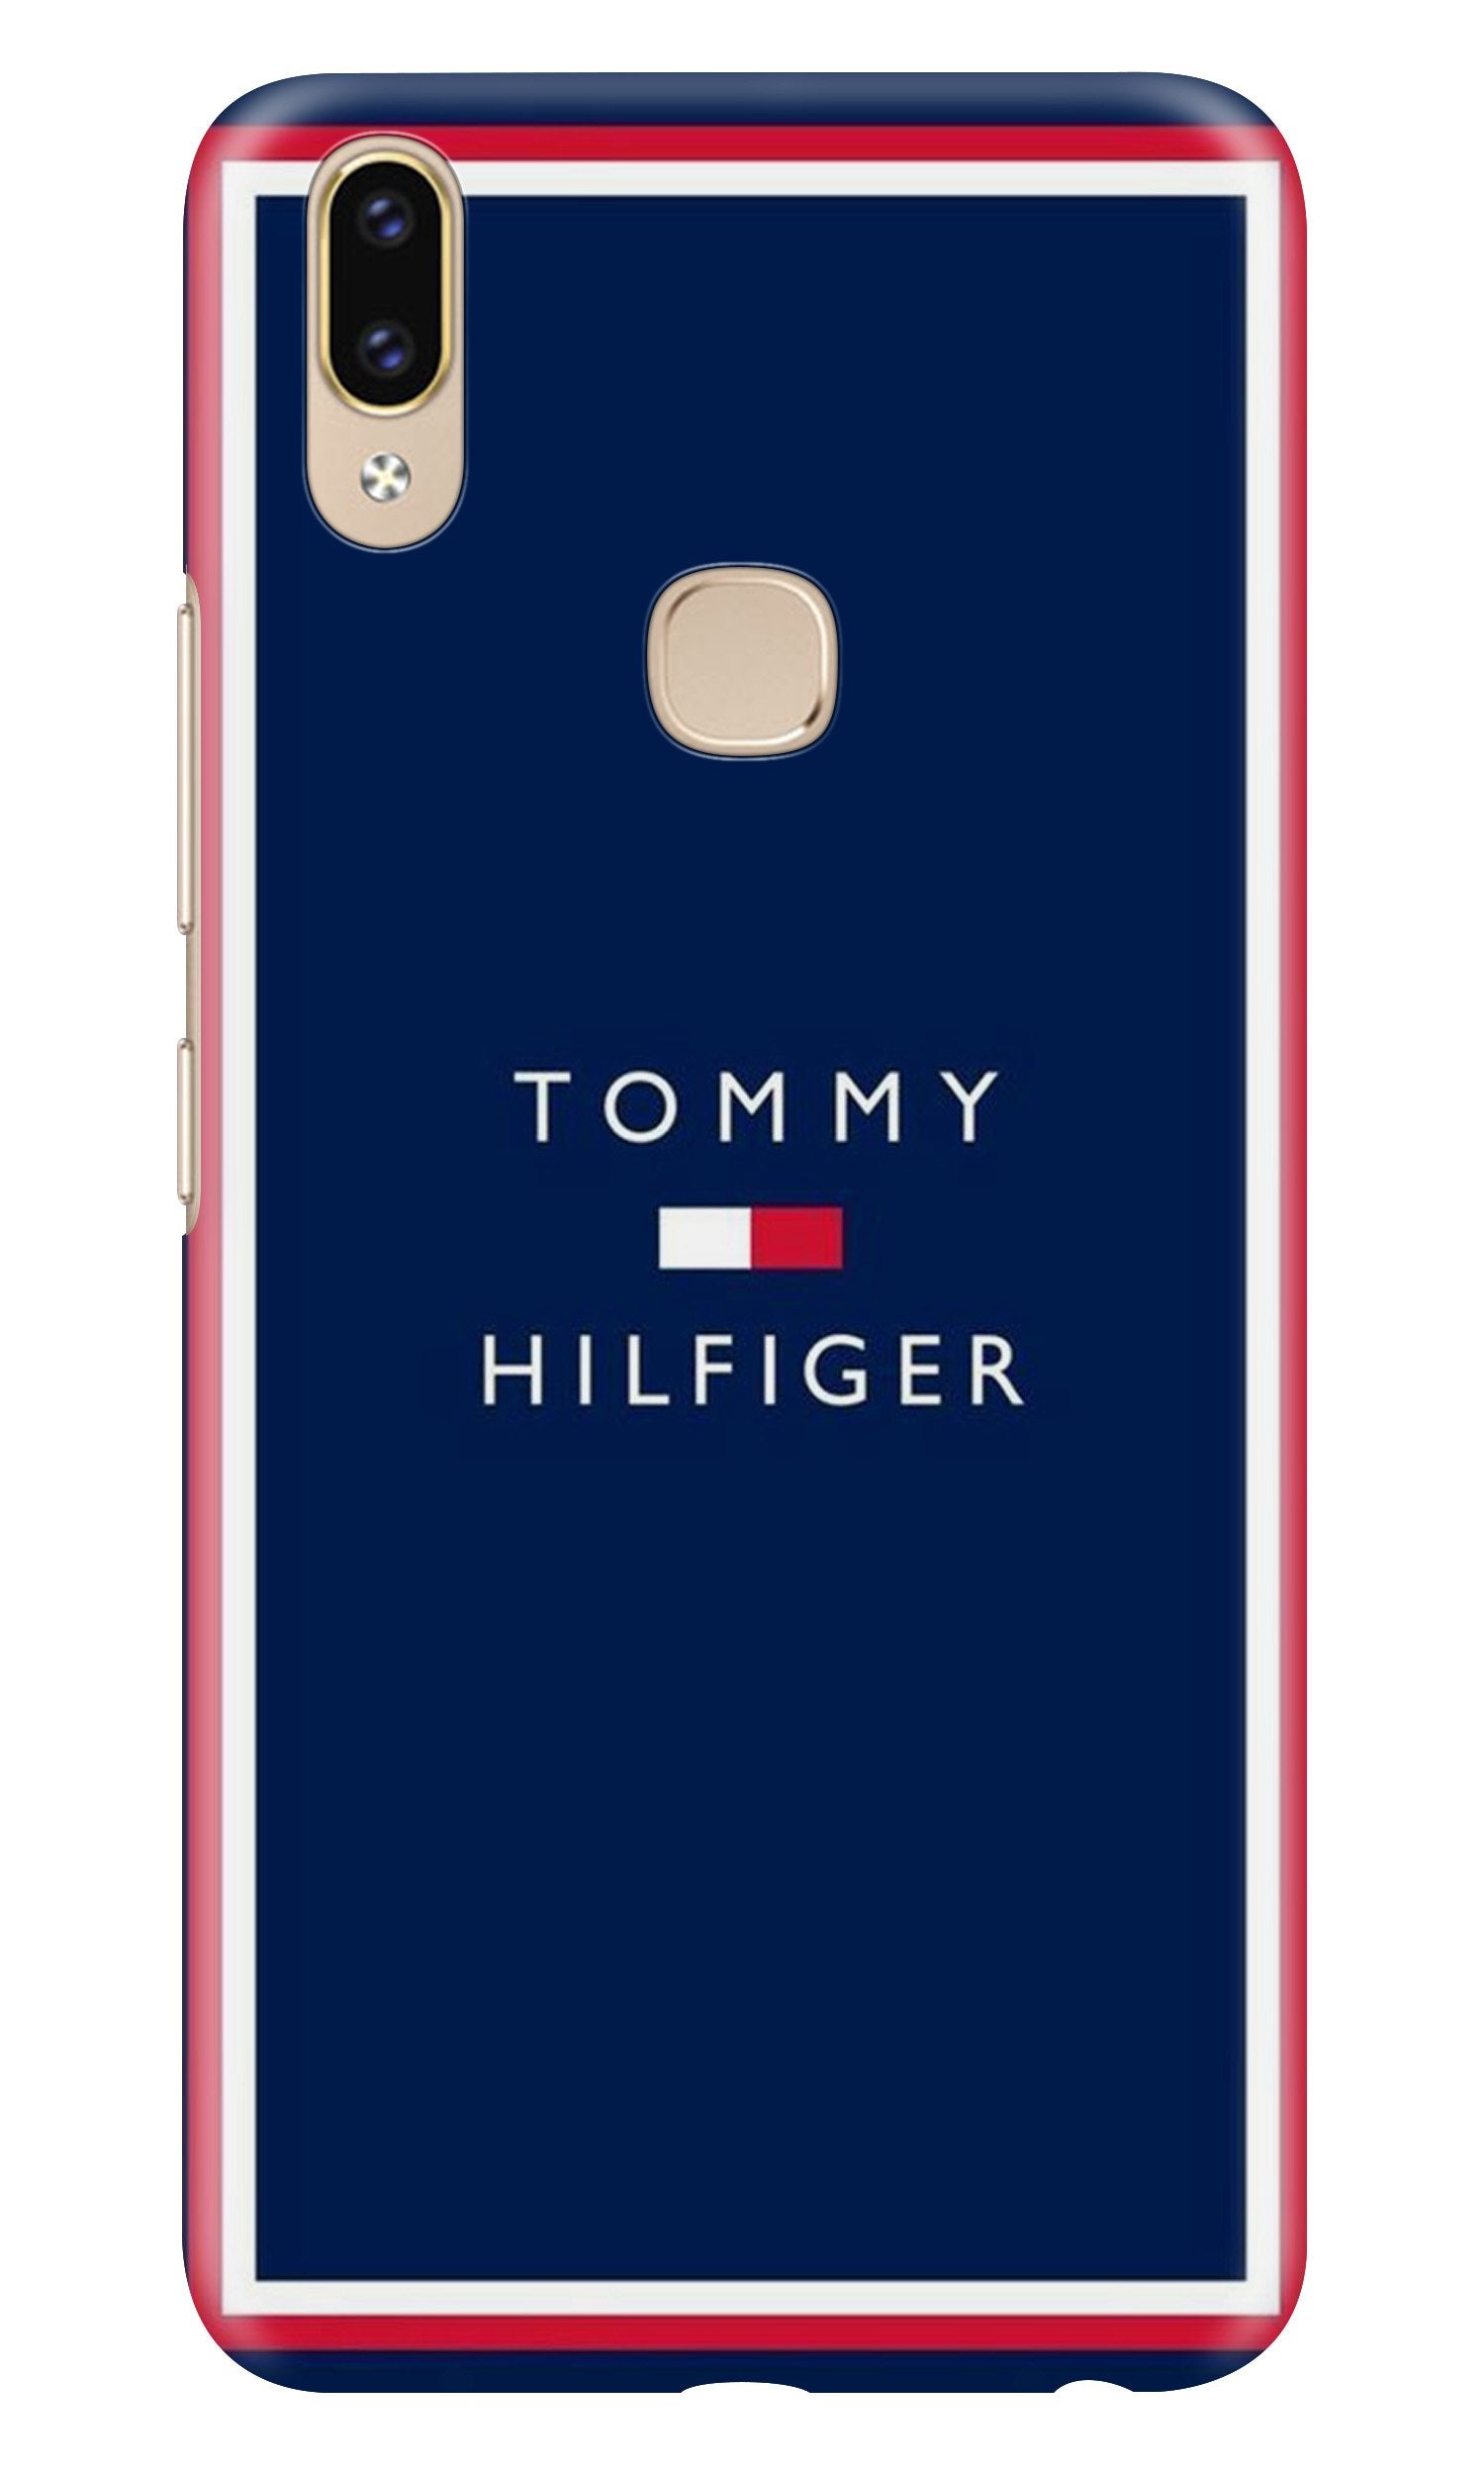 Tommy Hilfiger Case for Zenfone 5z (Design No. 275)